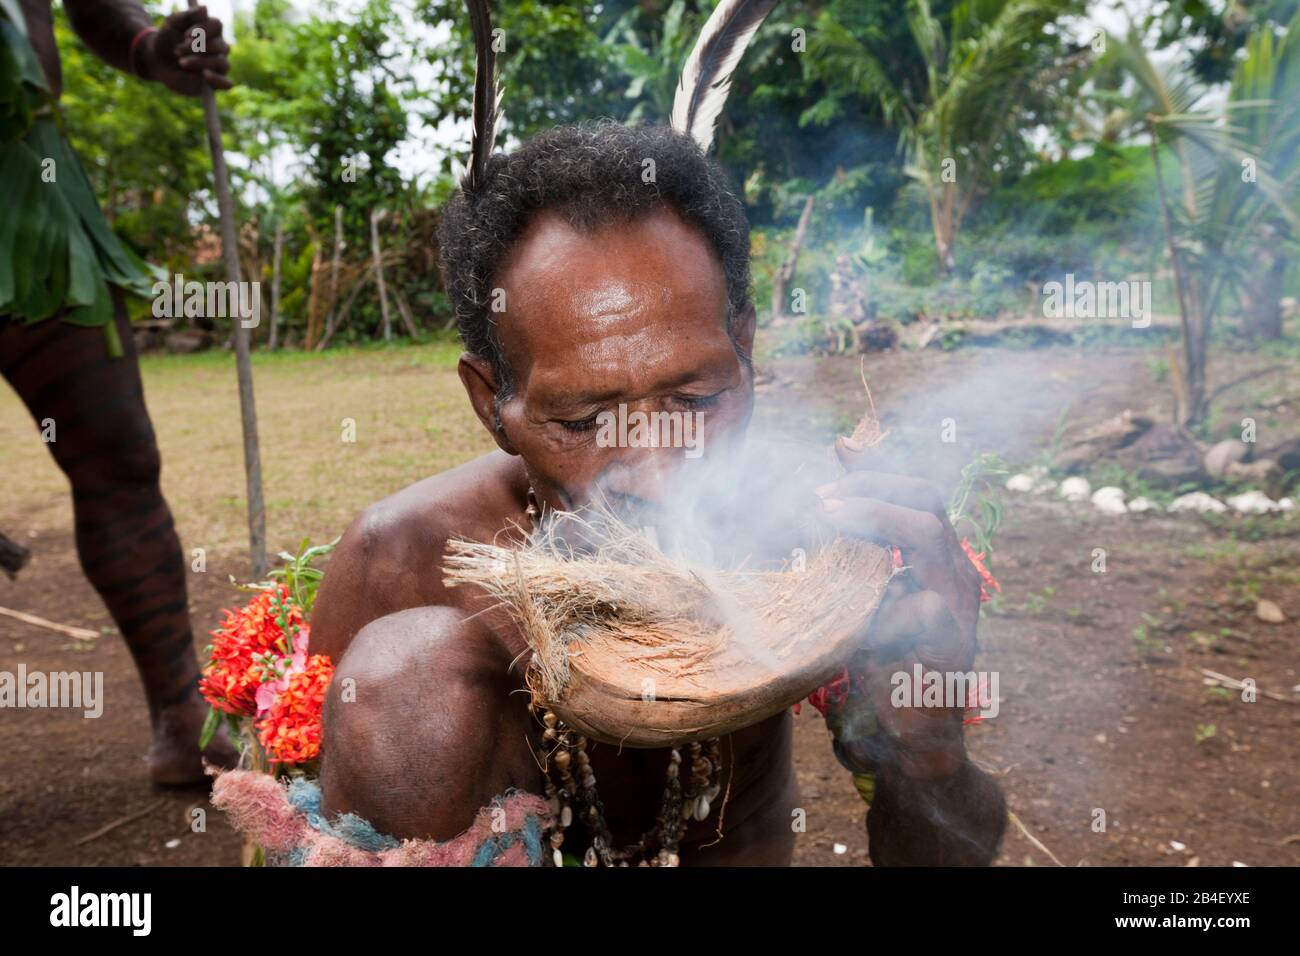 Démonstration de faire feu, Tufi, province de Oro, la Papouasie-Nouvelle-Guinée Banque D'Images